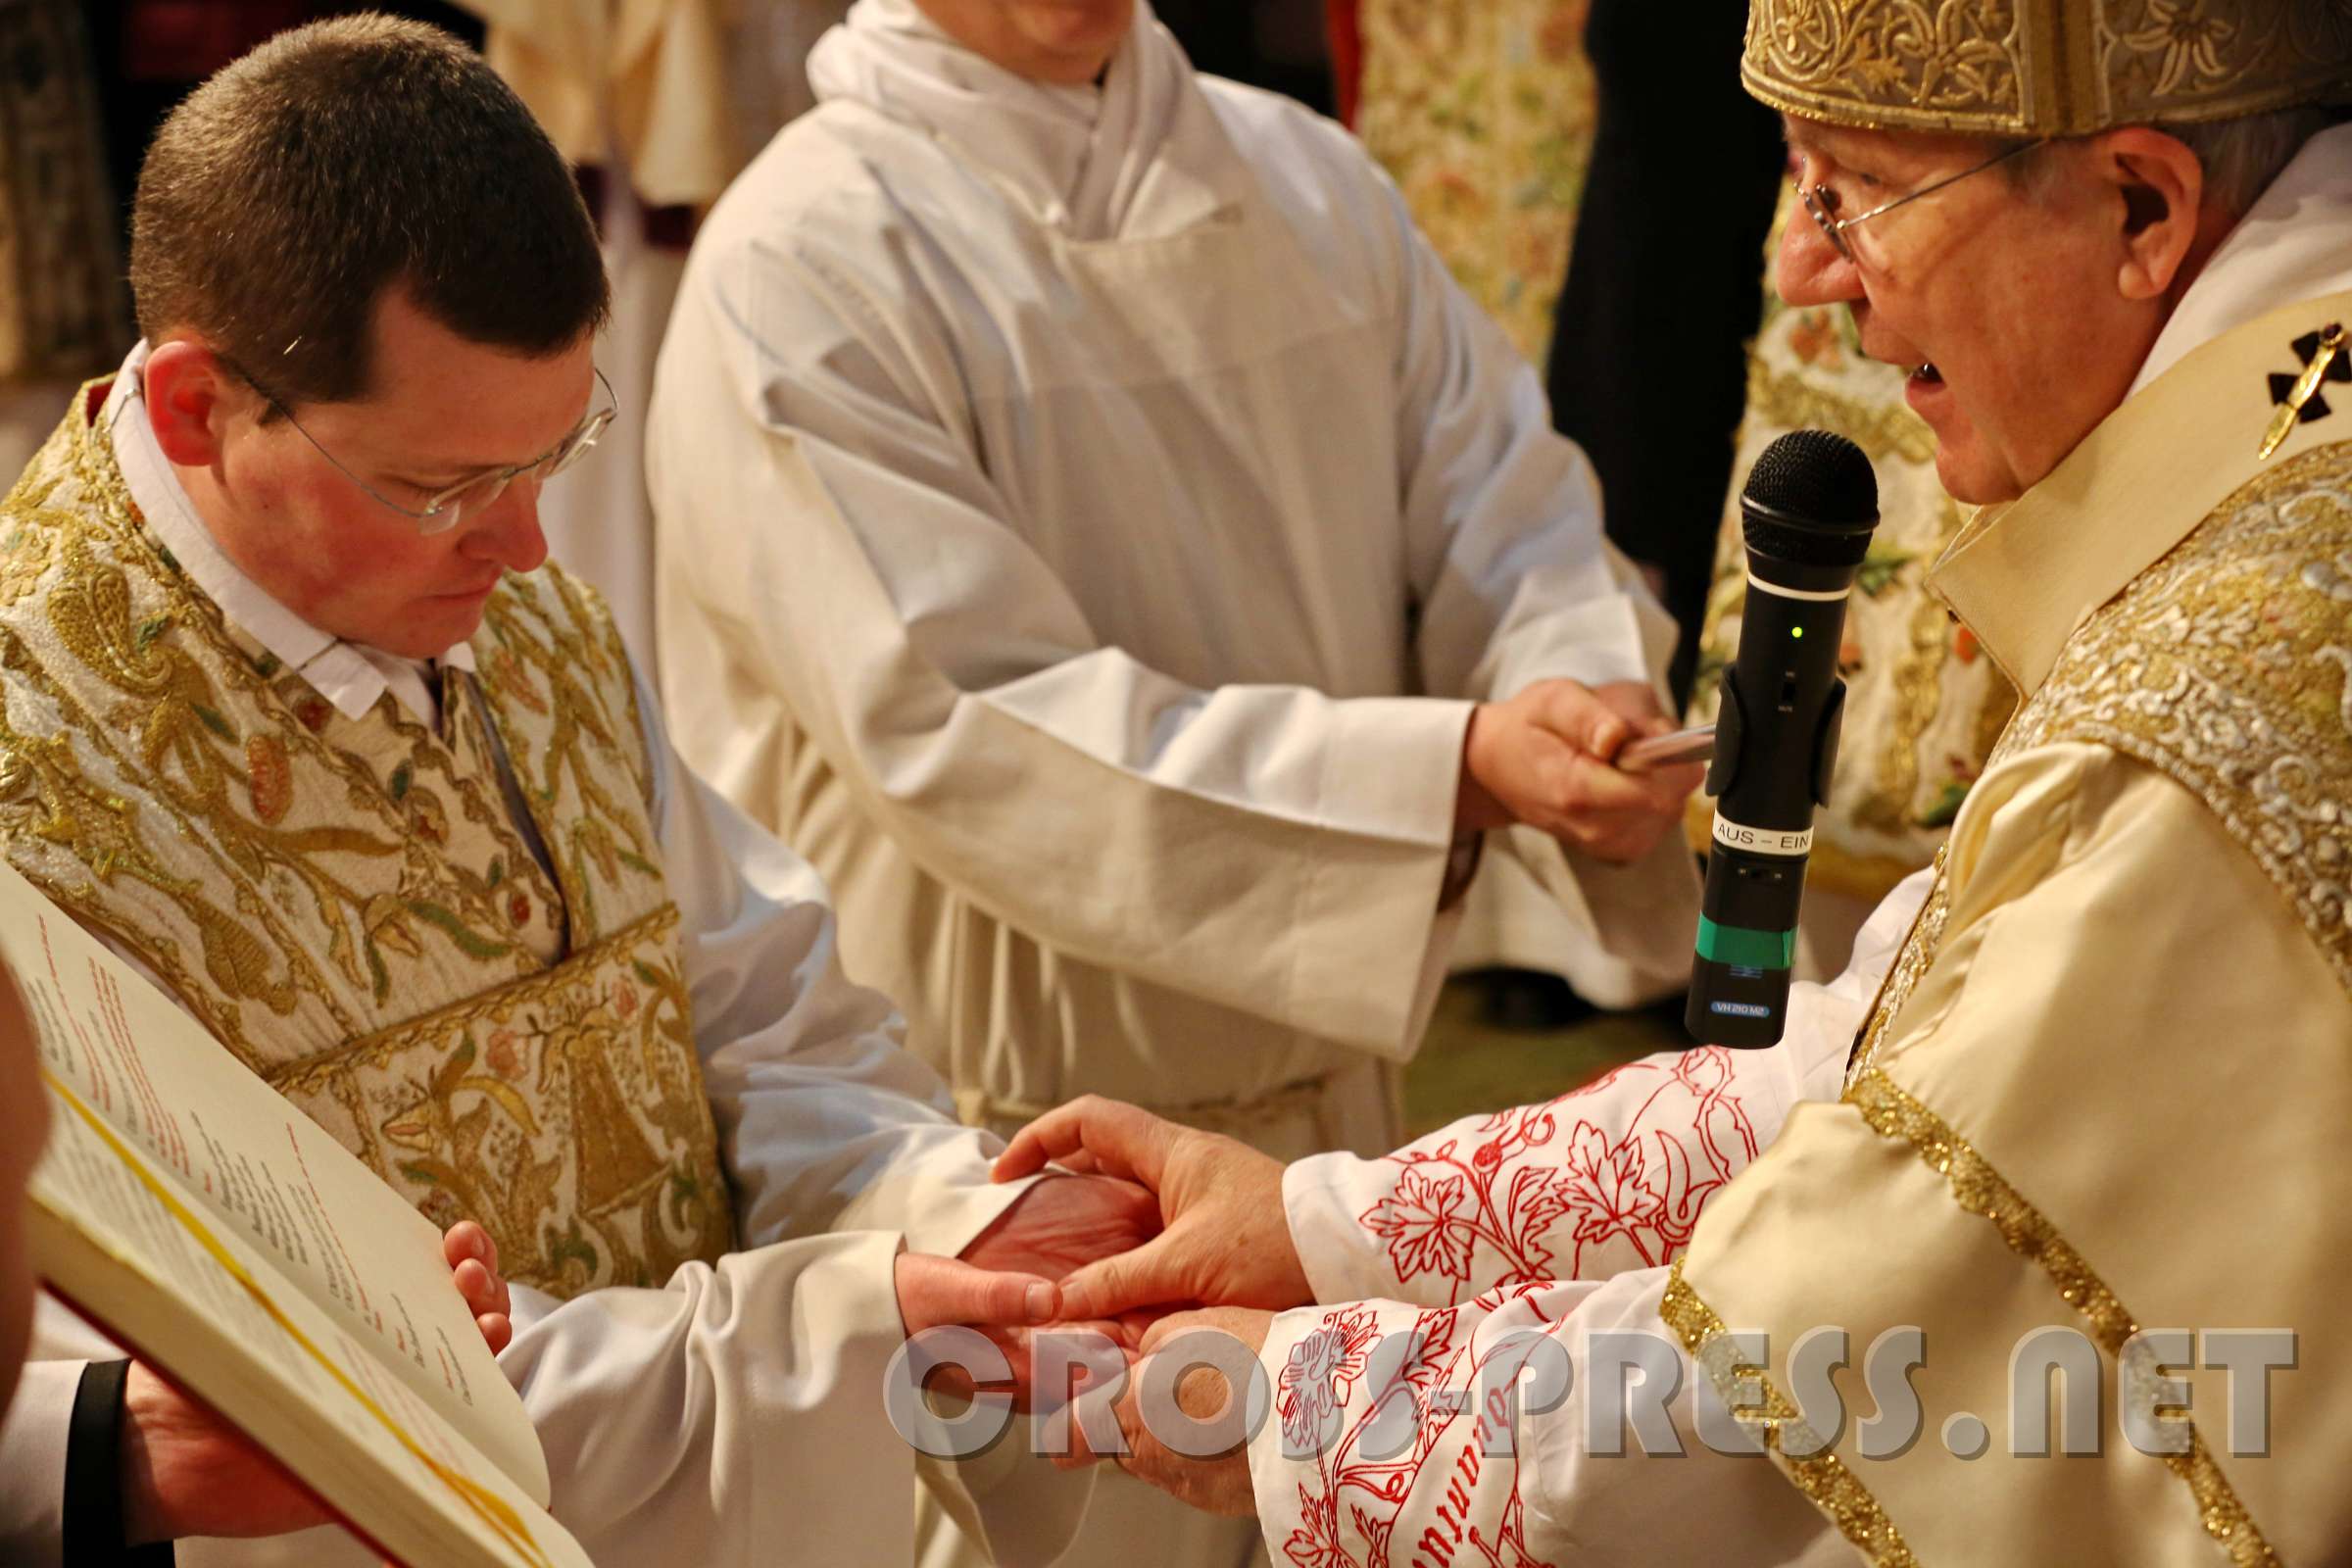 PriesterWeihe P.Johannes Paul und DiakonWeihe P.Kilian Kardinal Schönborn salbt die Hände des Neupriesters P.Johannes Paul mit Chrisam.